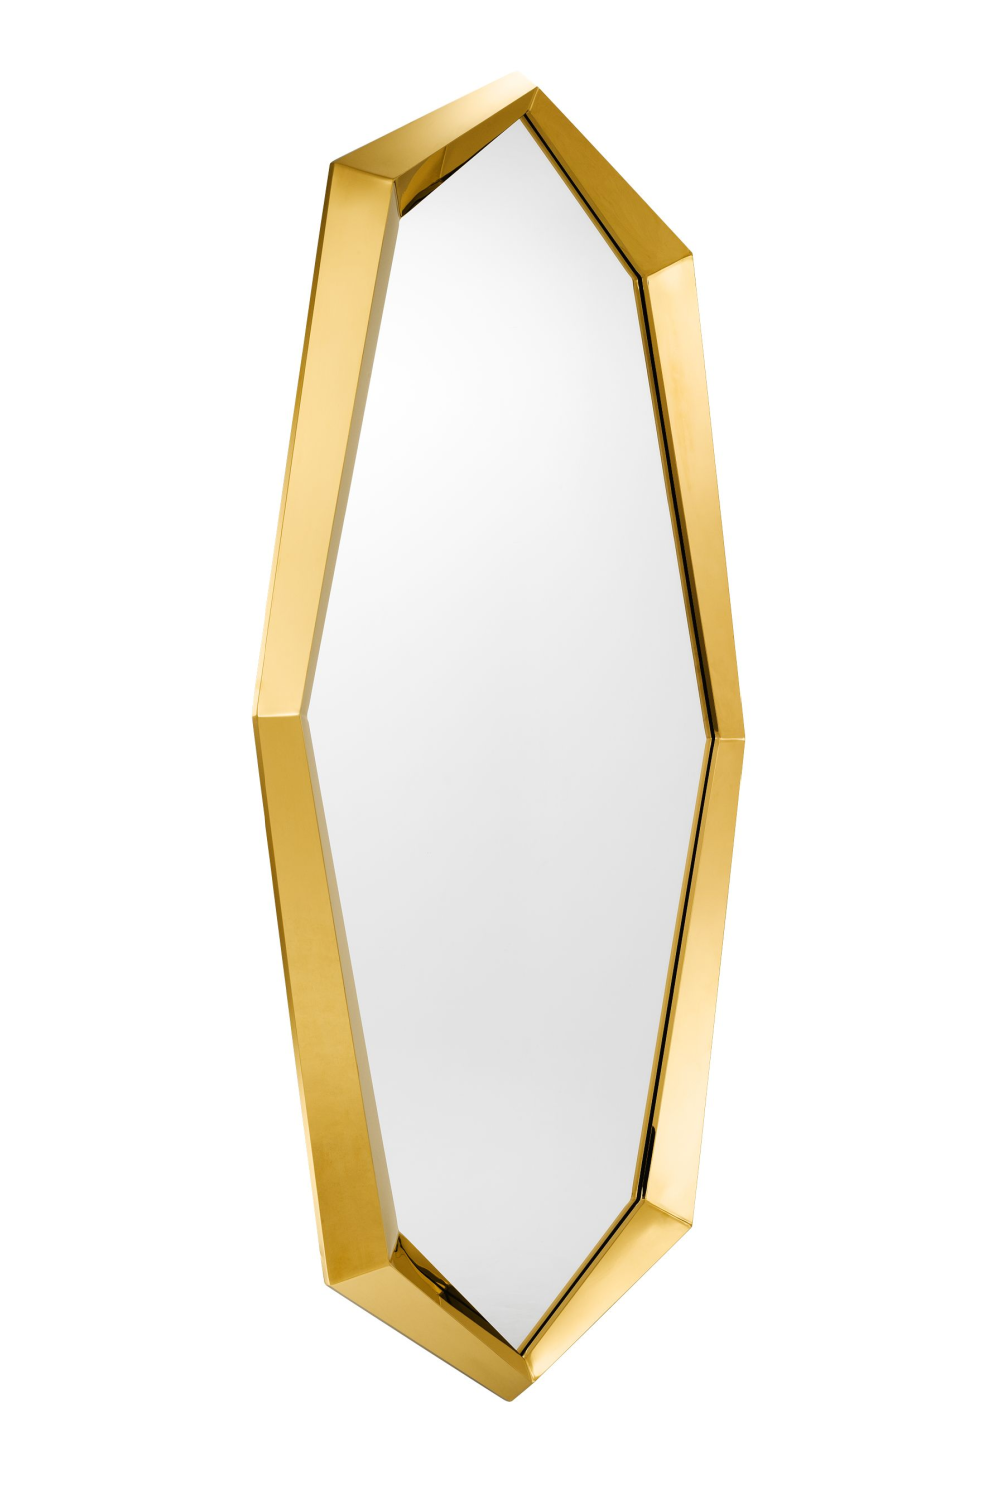 Concha Vega - Imperdibles dorados de Estrellas , ideales para cerrar  rebecas sin botones 3€ #imperdibles #broches